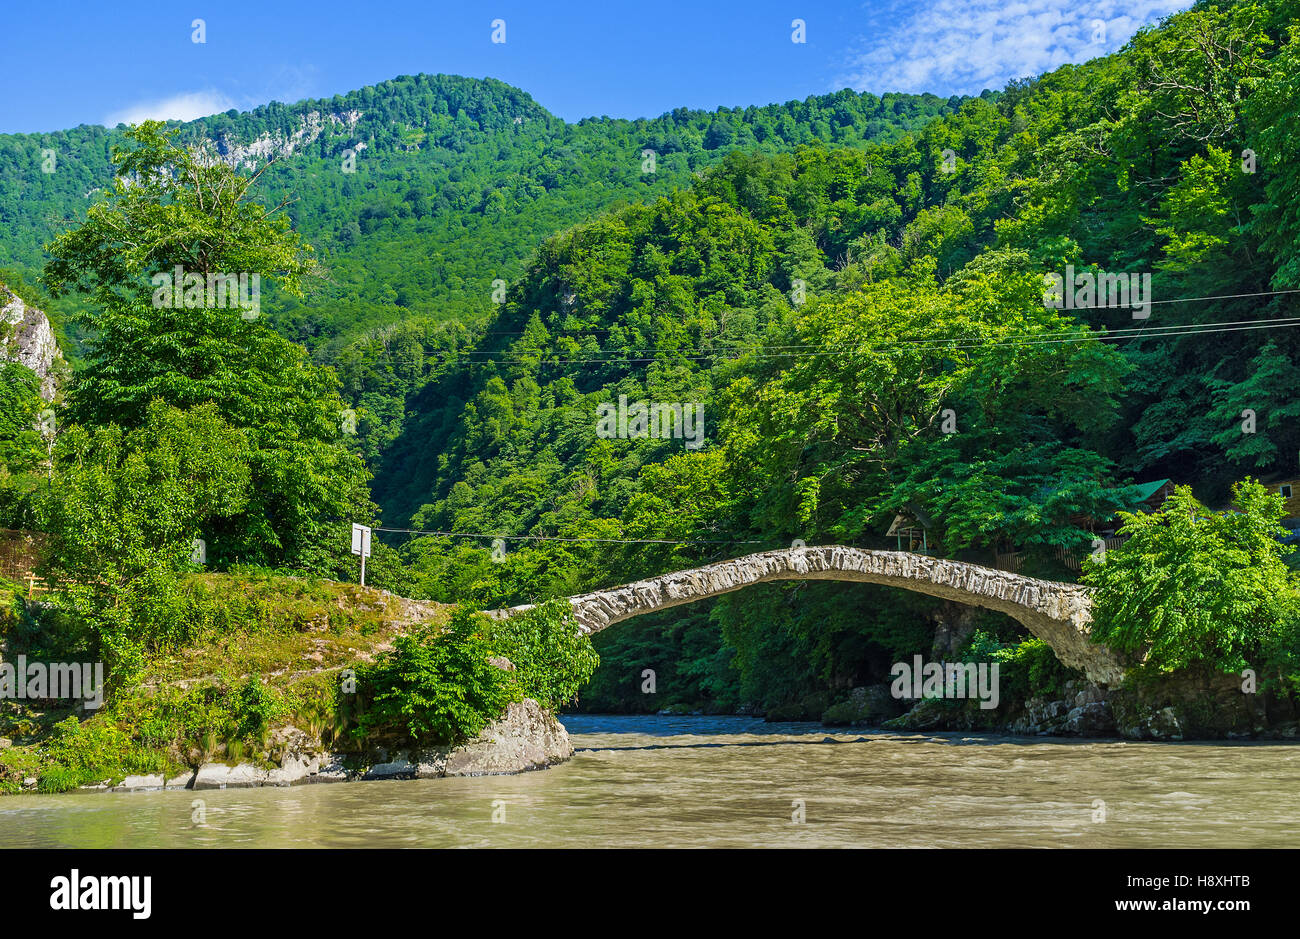 La pierre de la Reine Tamar voûté pont sur la rivière de montagne relie les rives verdoyantes de la vallée, Mahuntseti, Géorgie. Banque D'Images